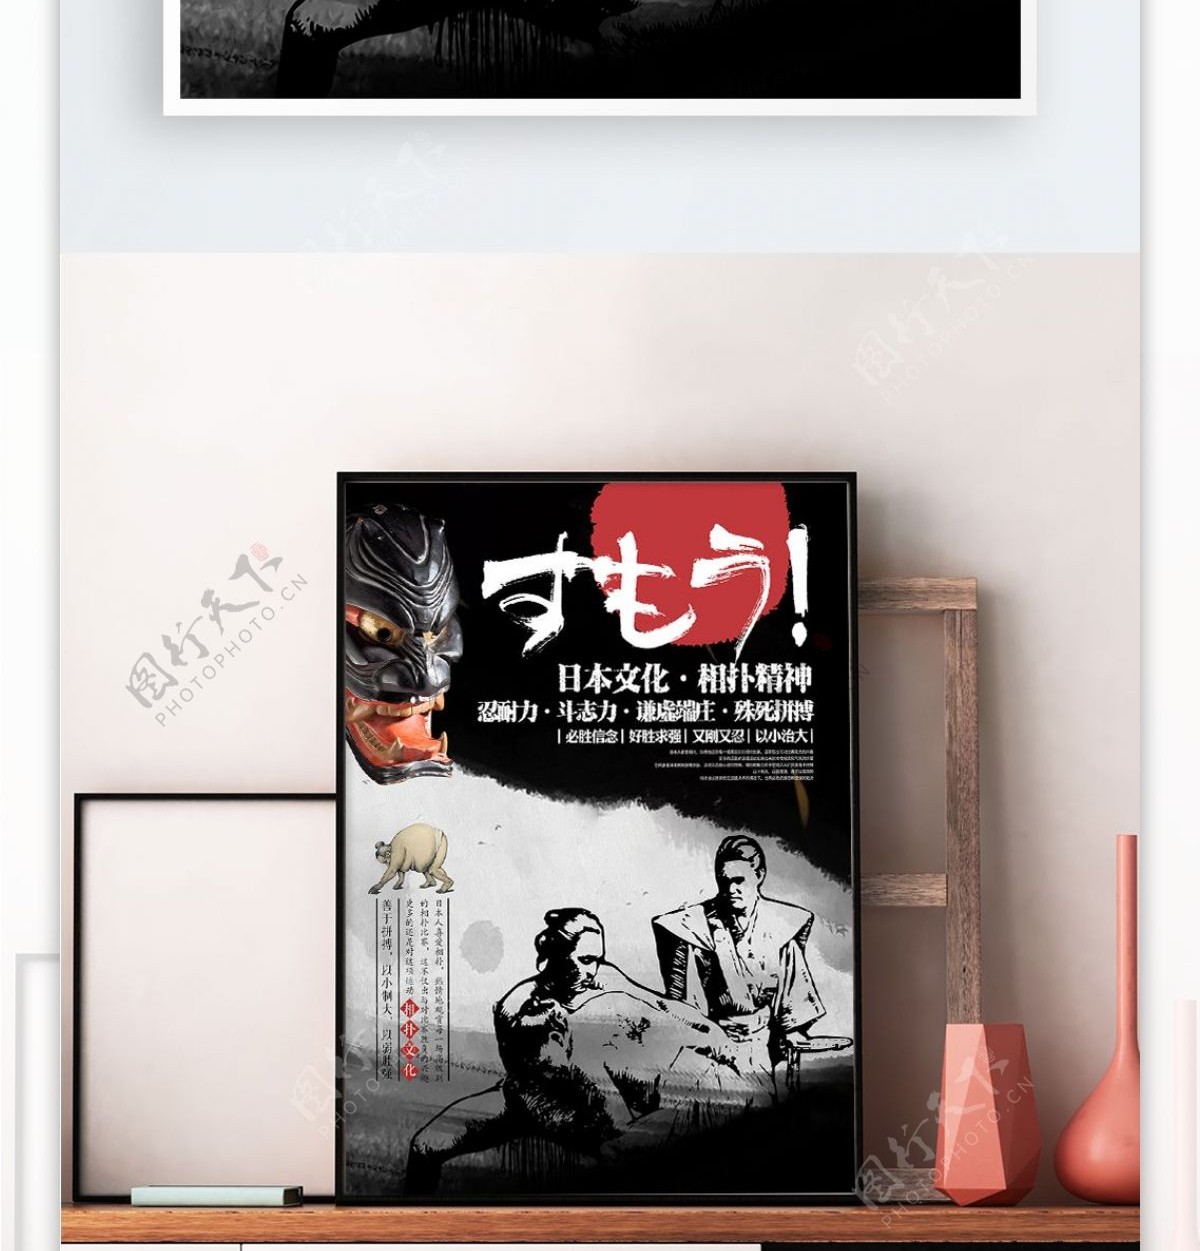 简约日本相扑运动文化宣传海报展板